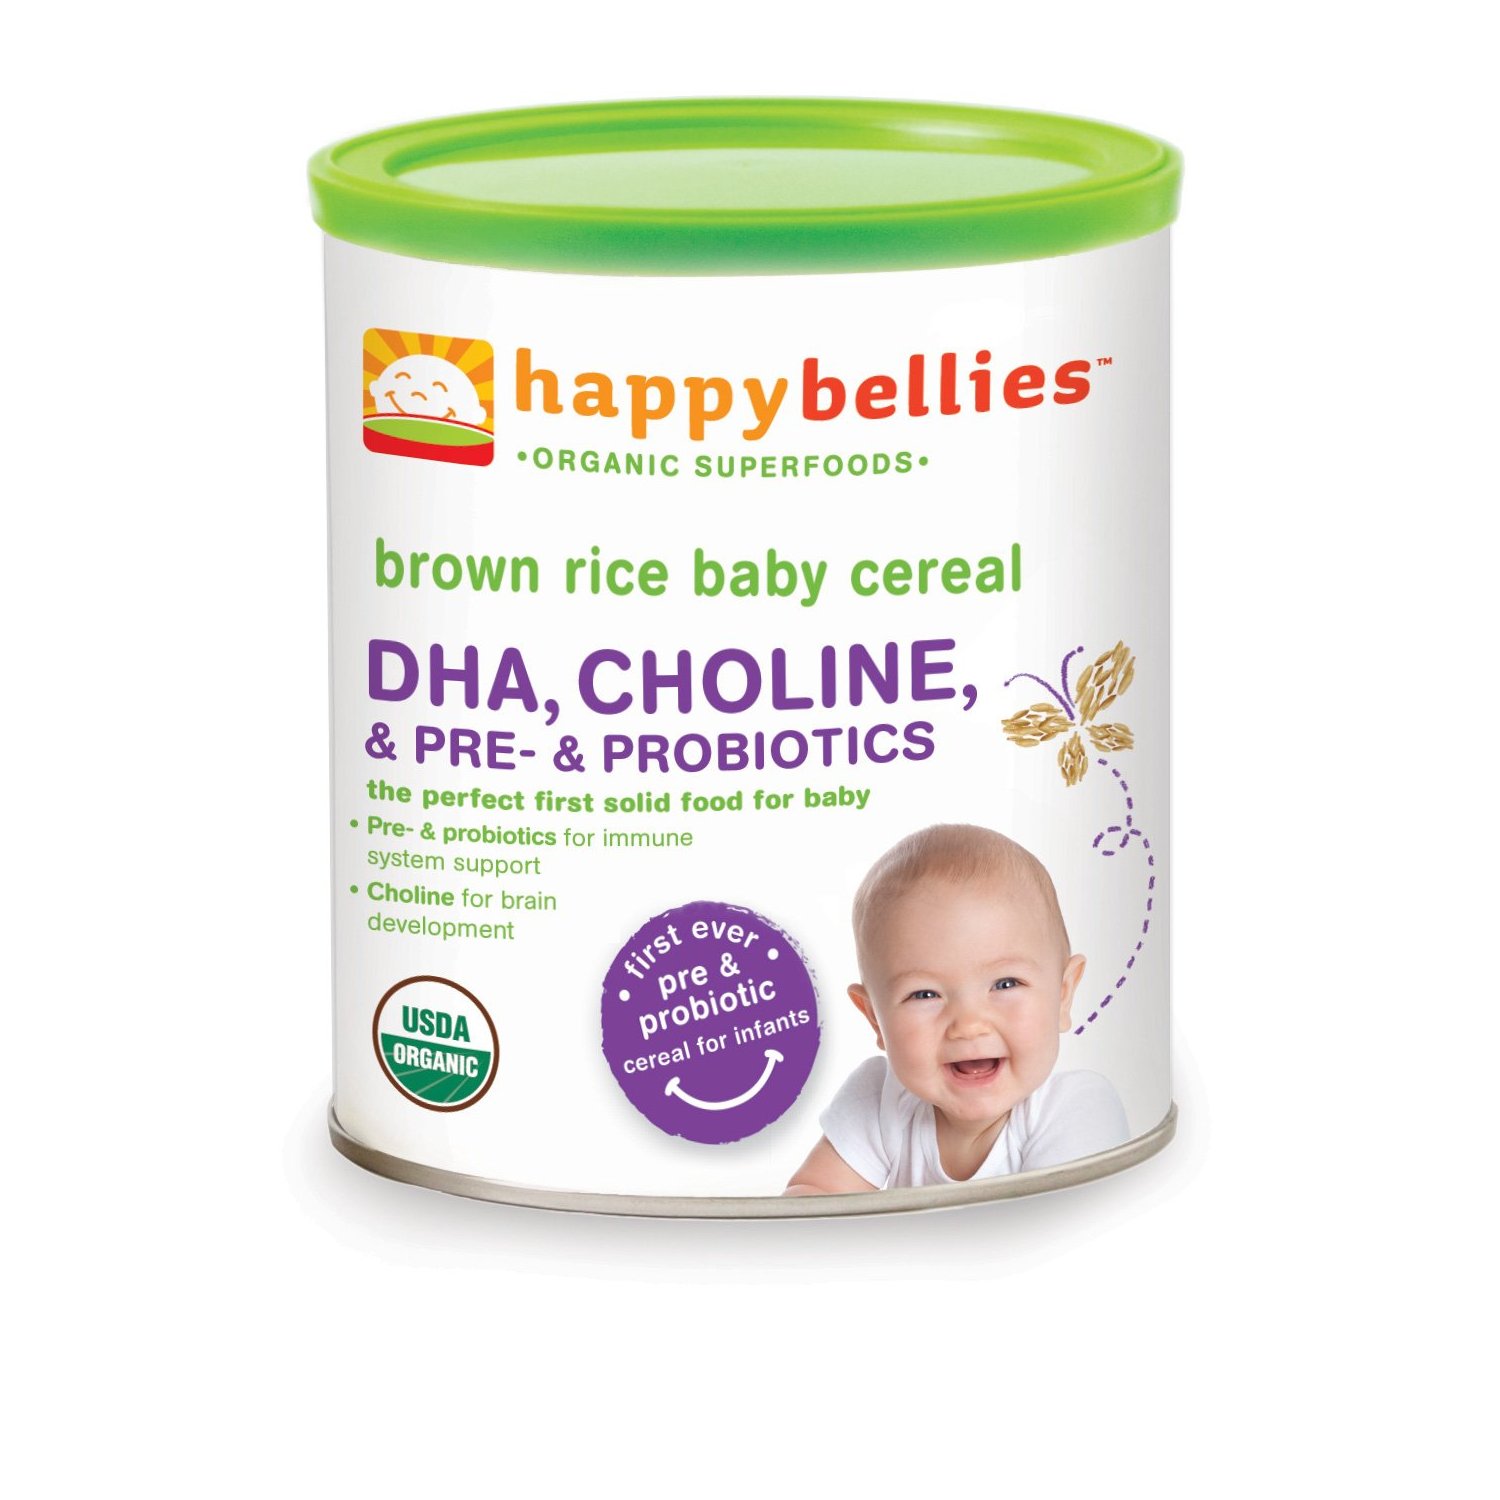 禧貝 Happy Bellies 糙米米粉（含DHA + Pre & Probiotics）6罐裝，現僅售$16.95，免運費